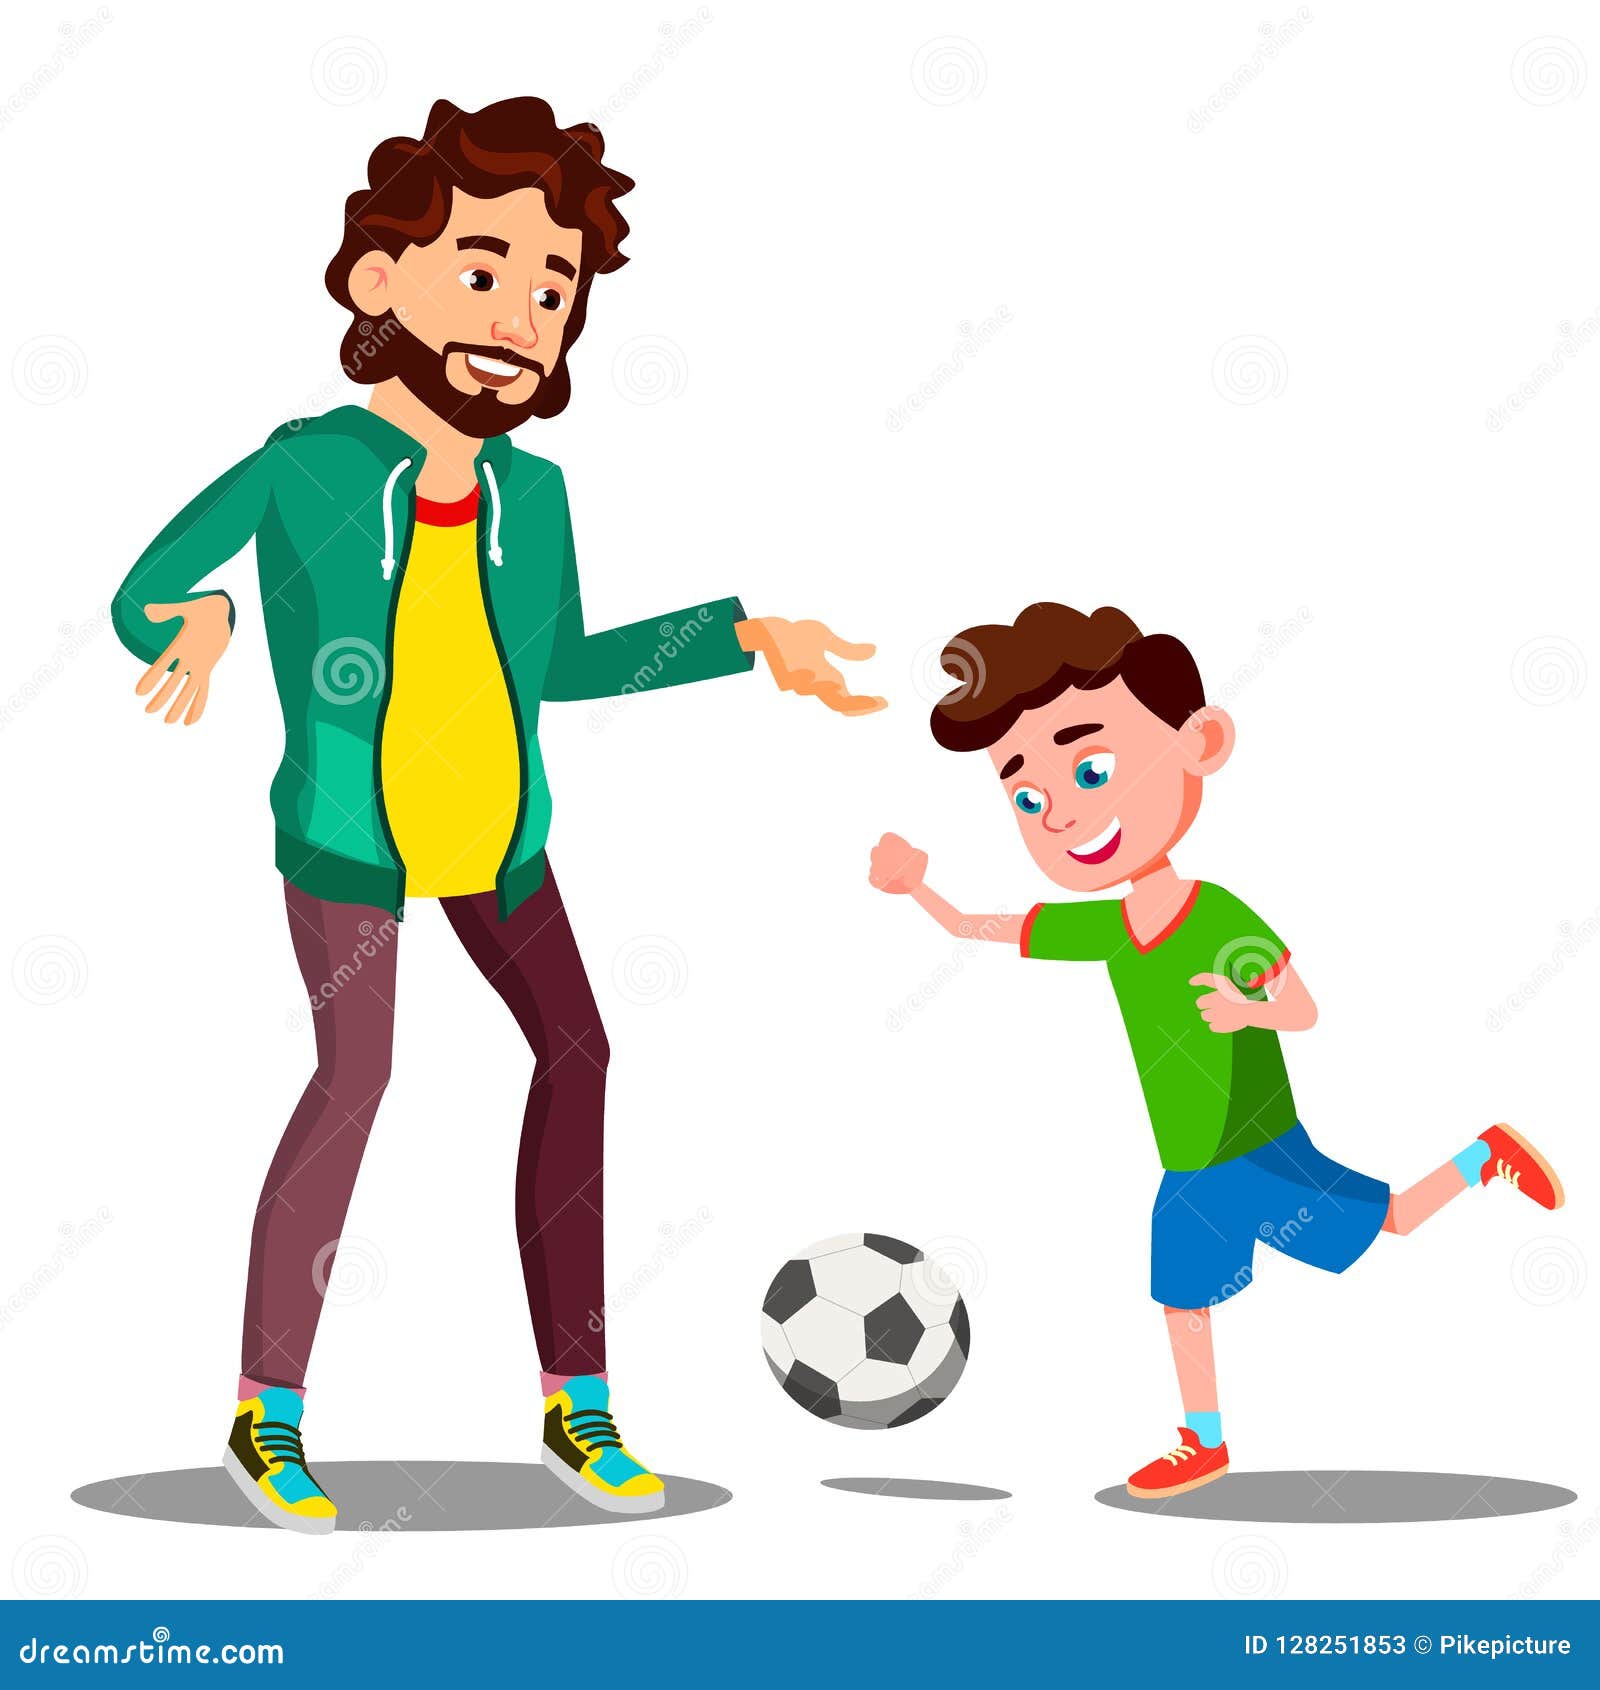 Папы играют в футбол. Папа играет в футбол. Папа с ребенком играют в футбол. Папа с сыном играют в футбол рисунок. Детские картинки игра в футбол с папой.